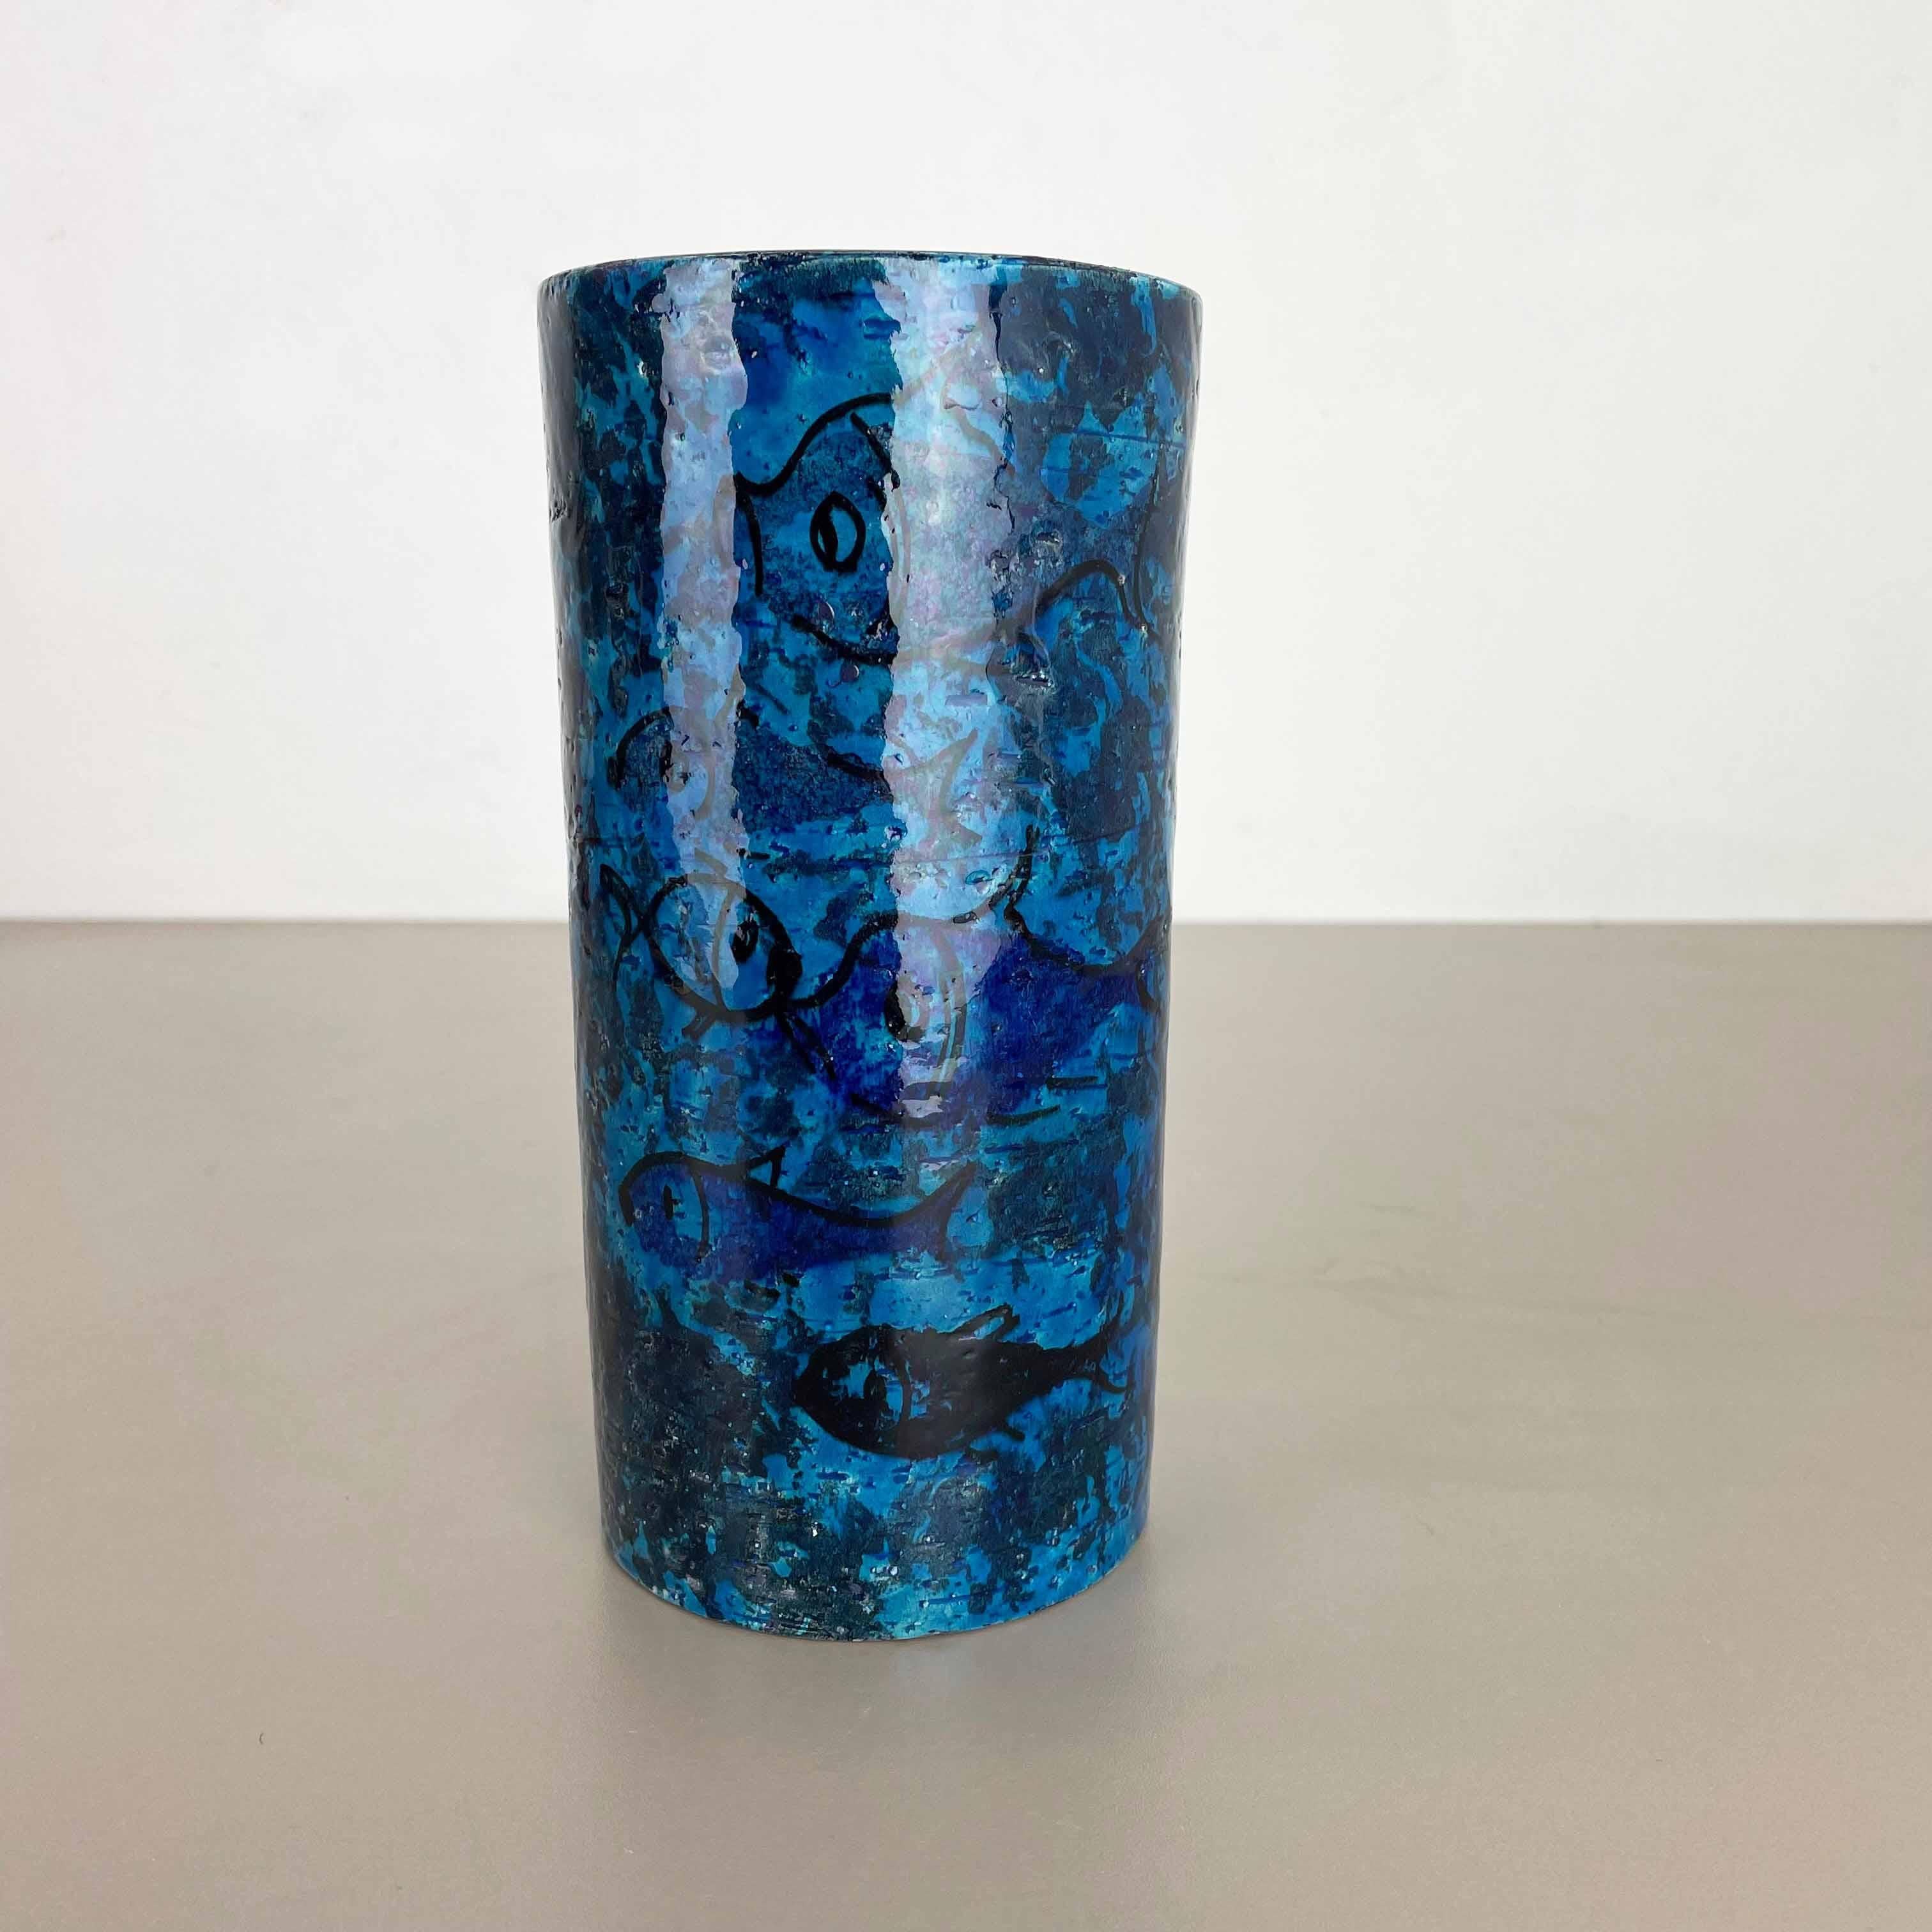 Article :

Vases en céramique poisson ilustration abstraite de poisson en bleu rimini


Design :

Aldo Londi


Producteur :

Bitossi, Italie


Décennie :

1960s


Matériau :

Céramique



  

Ce vase original en céramique vintage a été produit dans